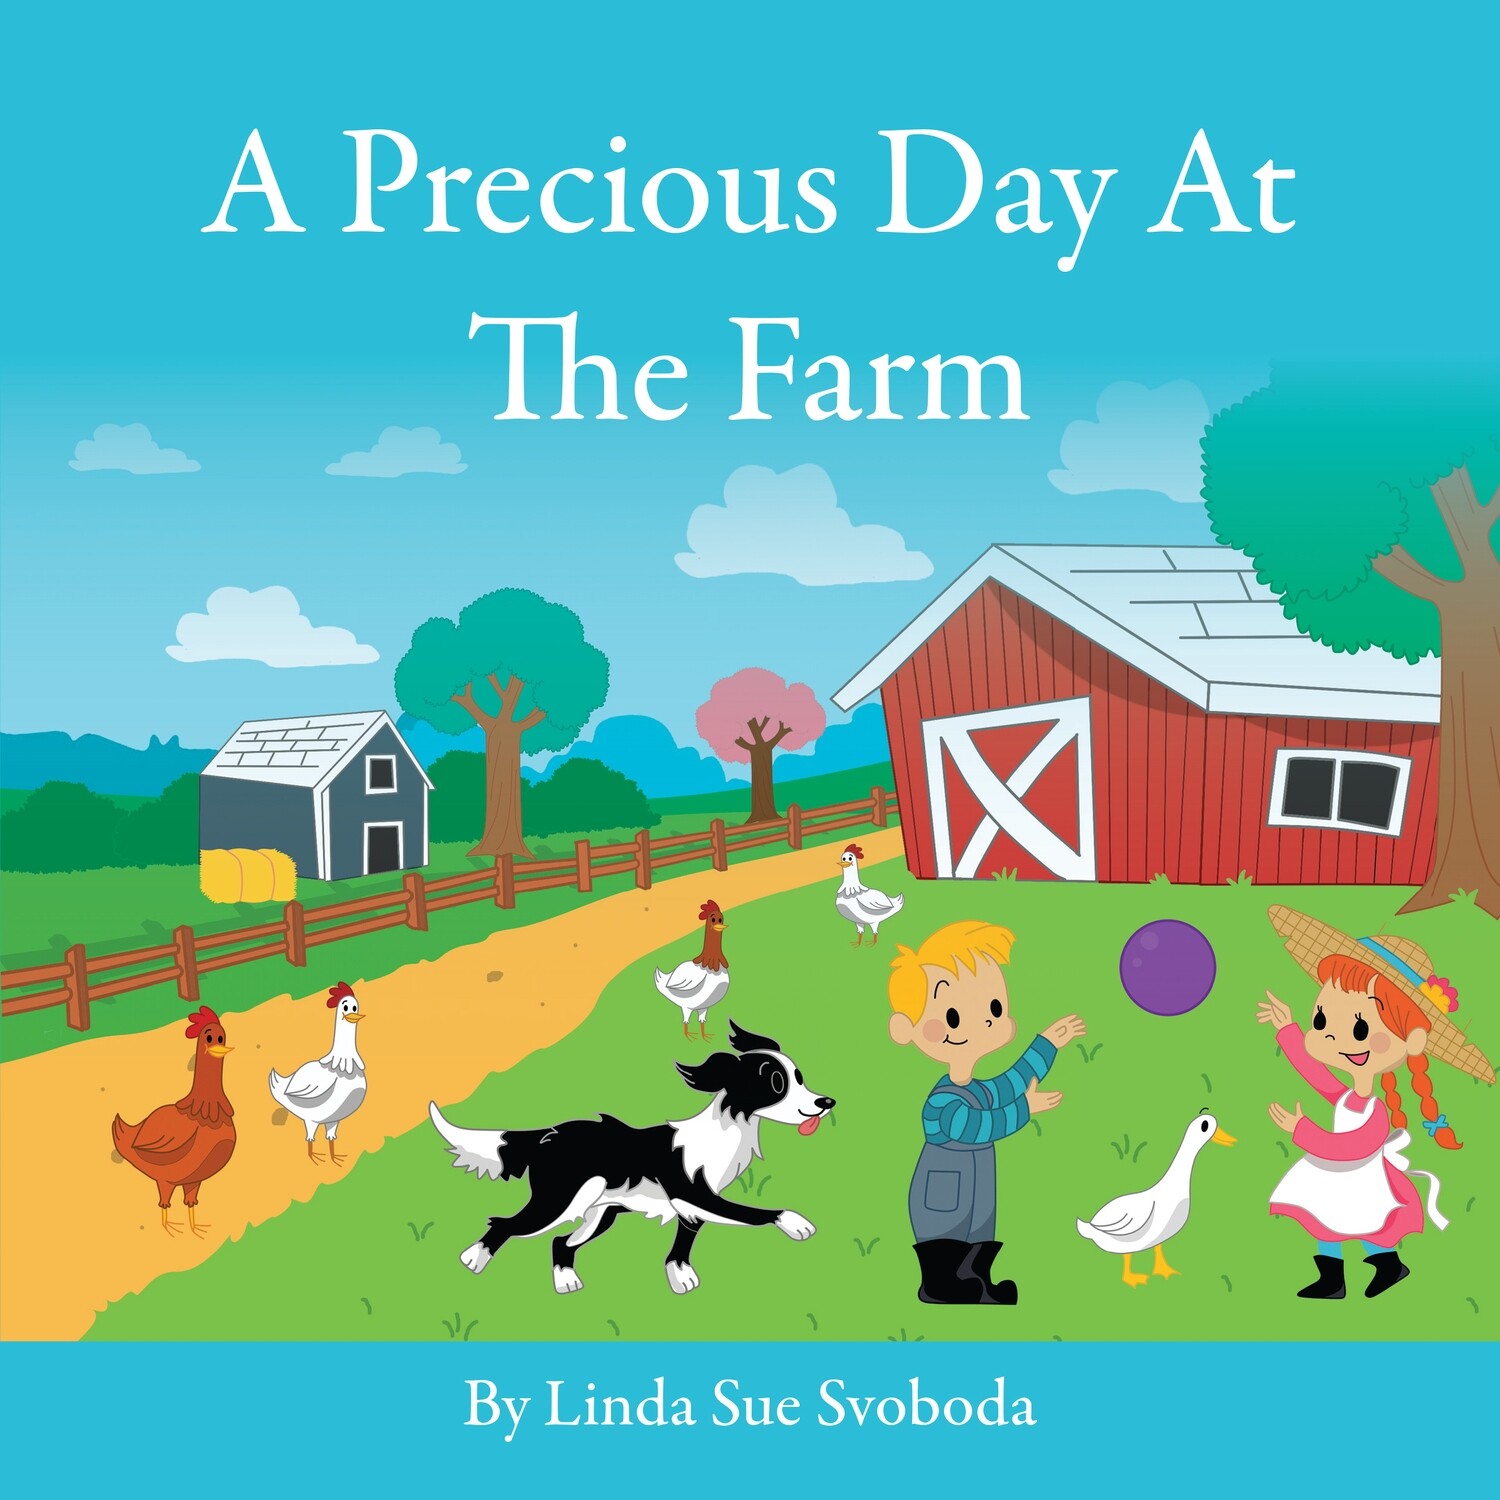 A Precious Day At the Farm